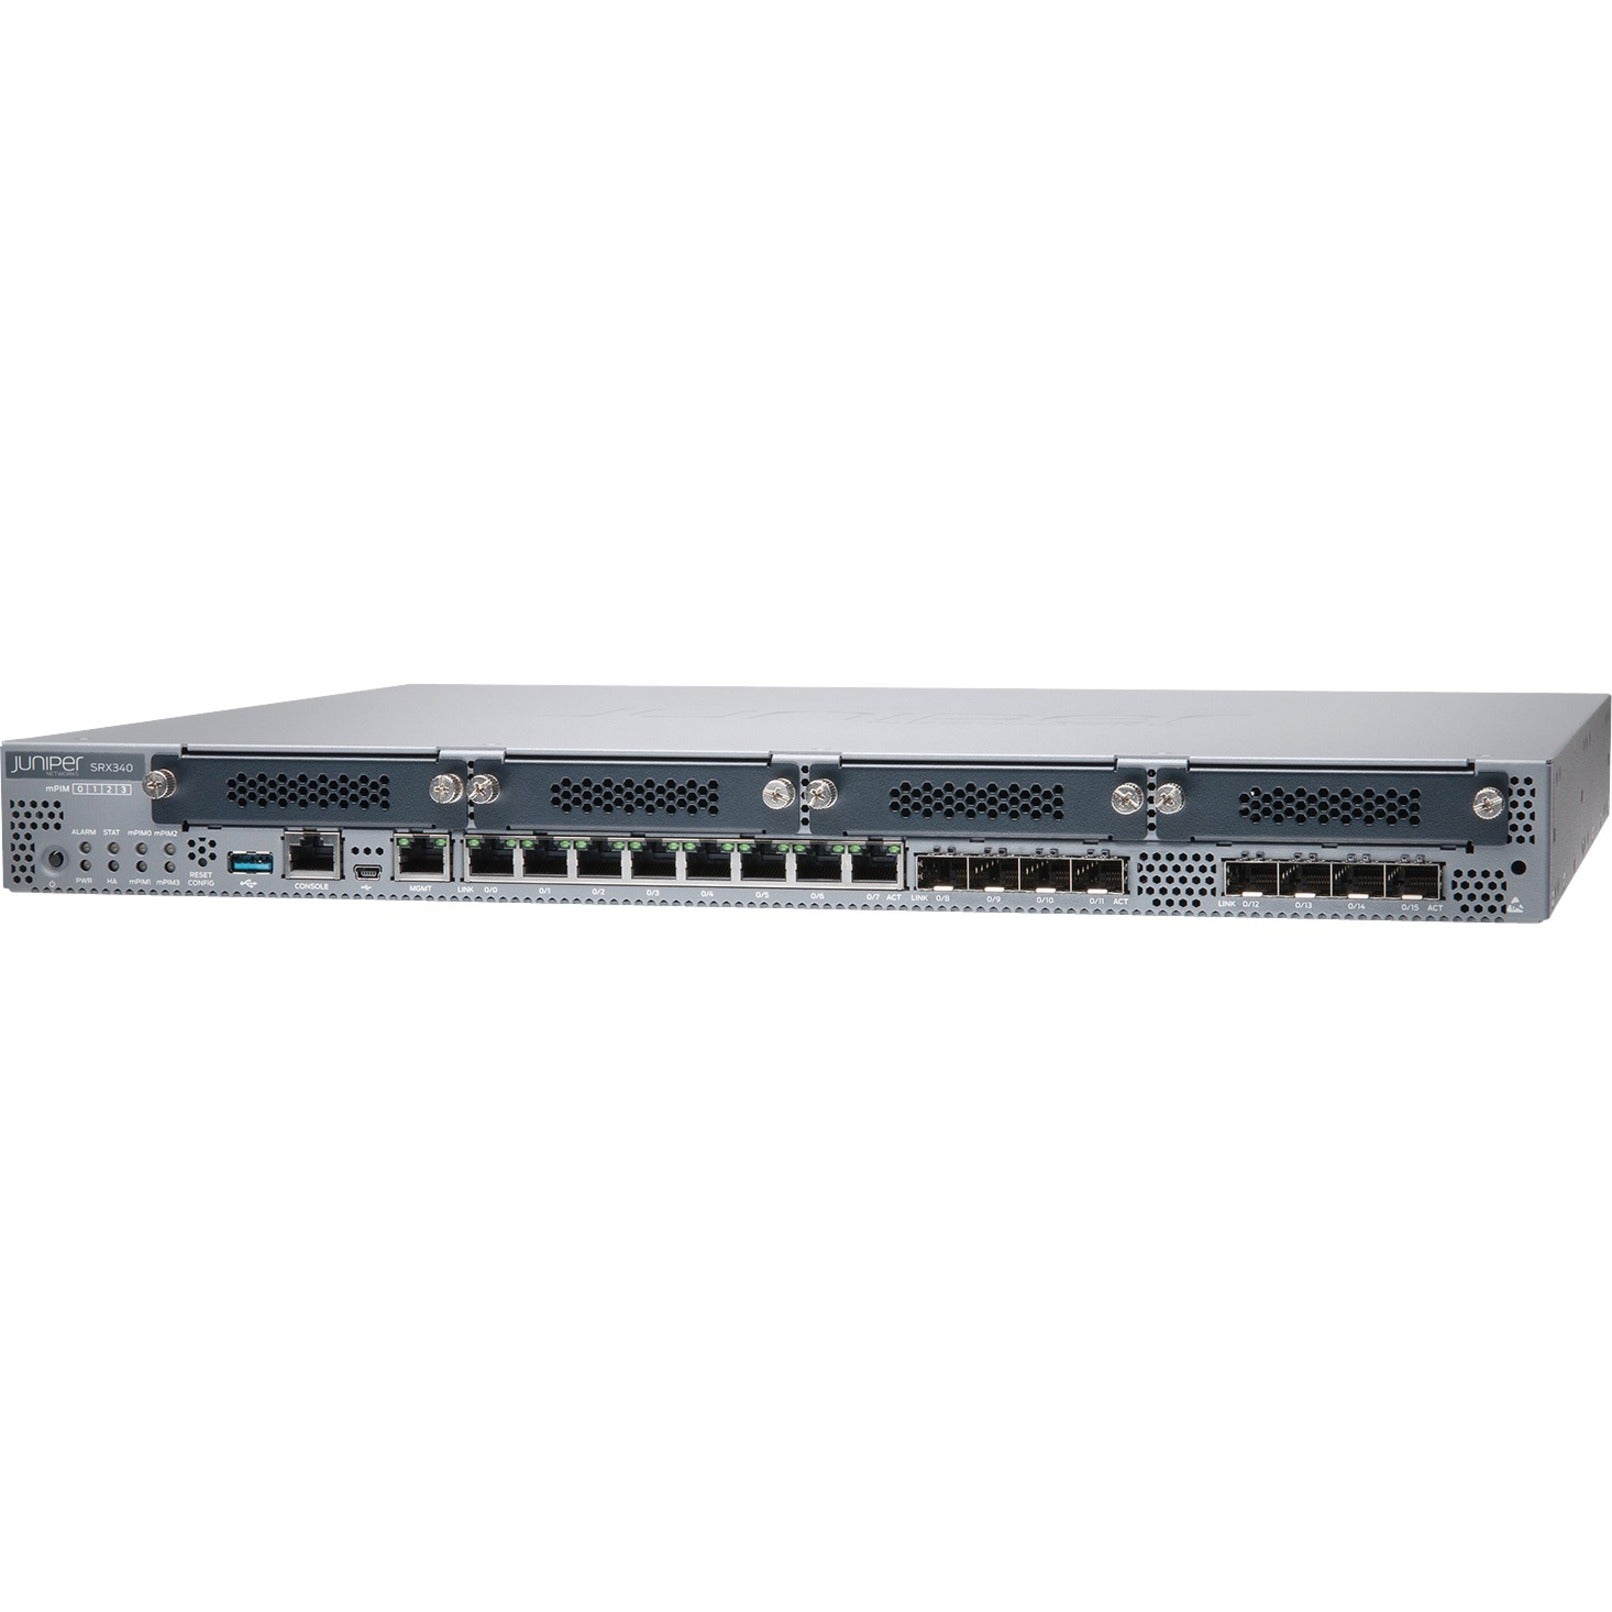 Juniper SRX340 Router, Gigabit Ethernet, 8 Ports, 1U Rack-mountable